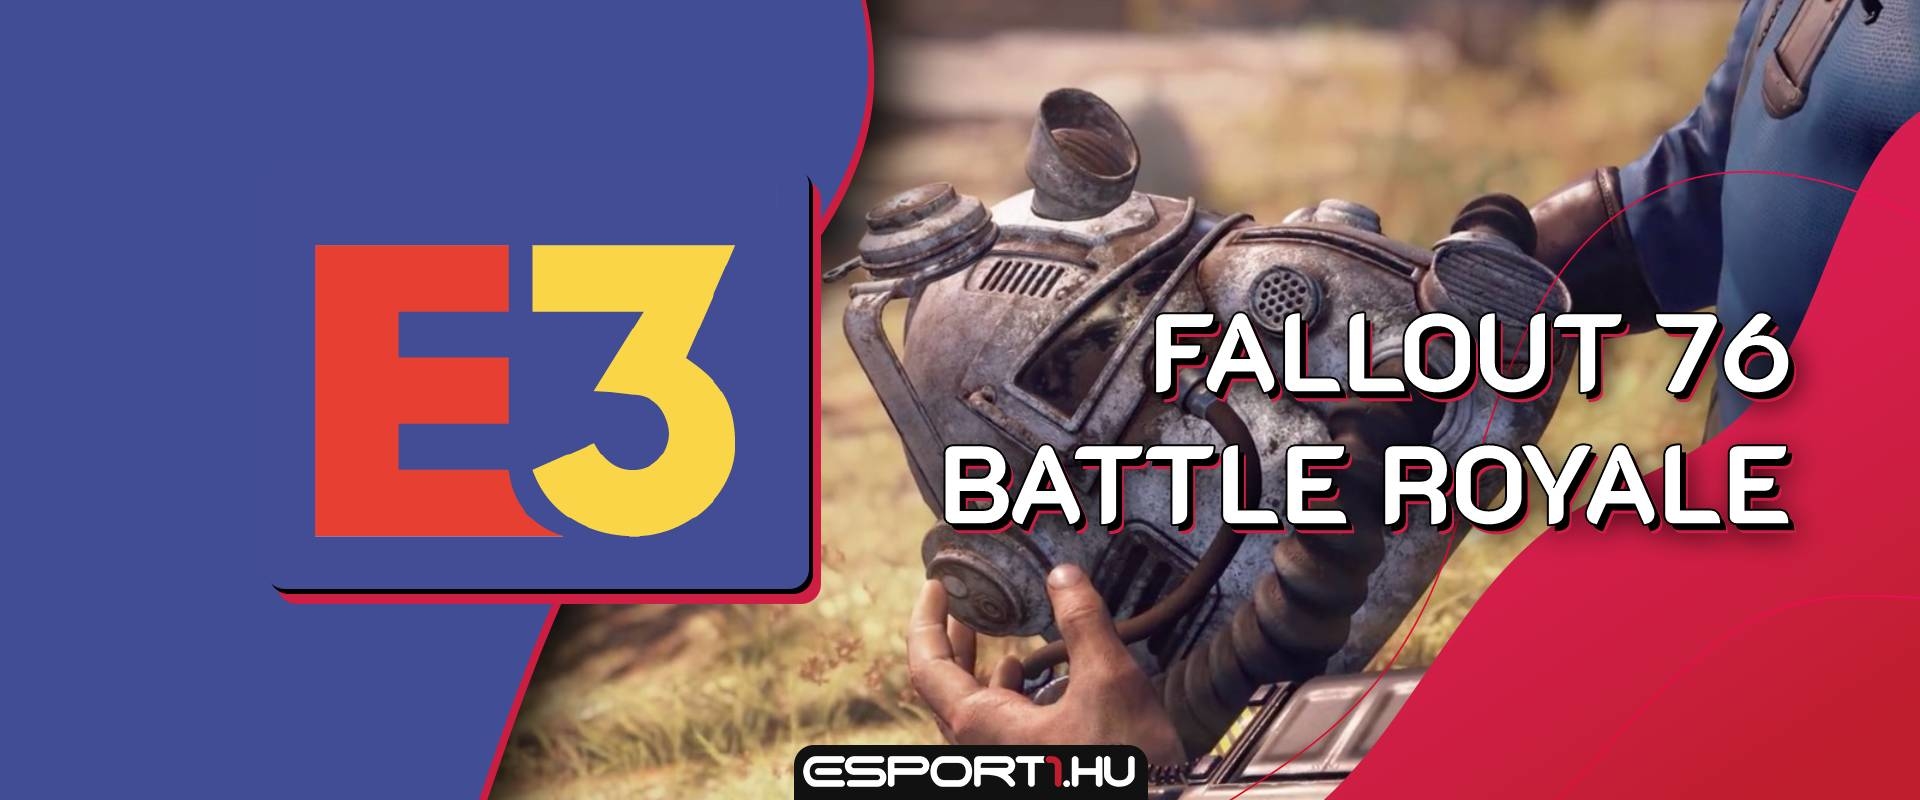 E3 2019 - Rengeteg újdonság, köztük Battle Royale mód is érkezik a Fallout 76-ba